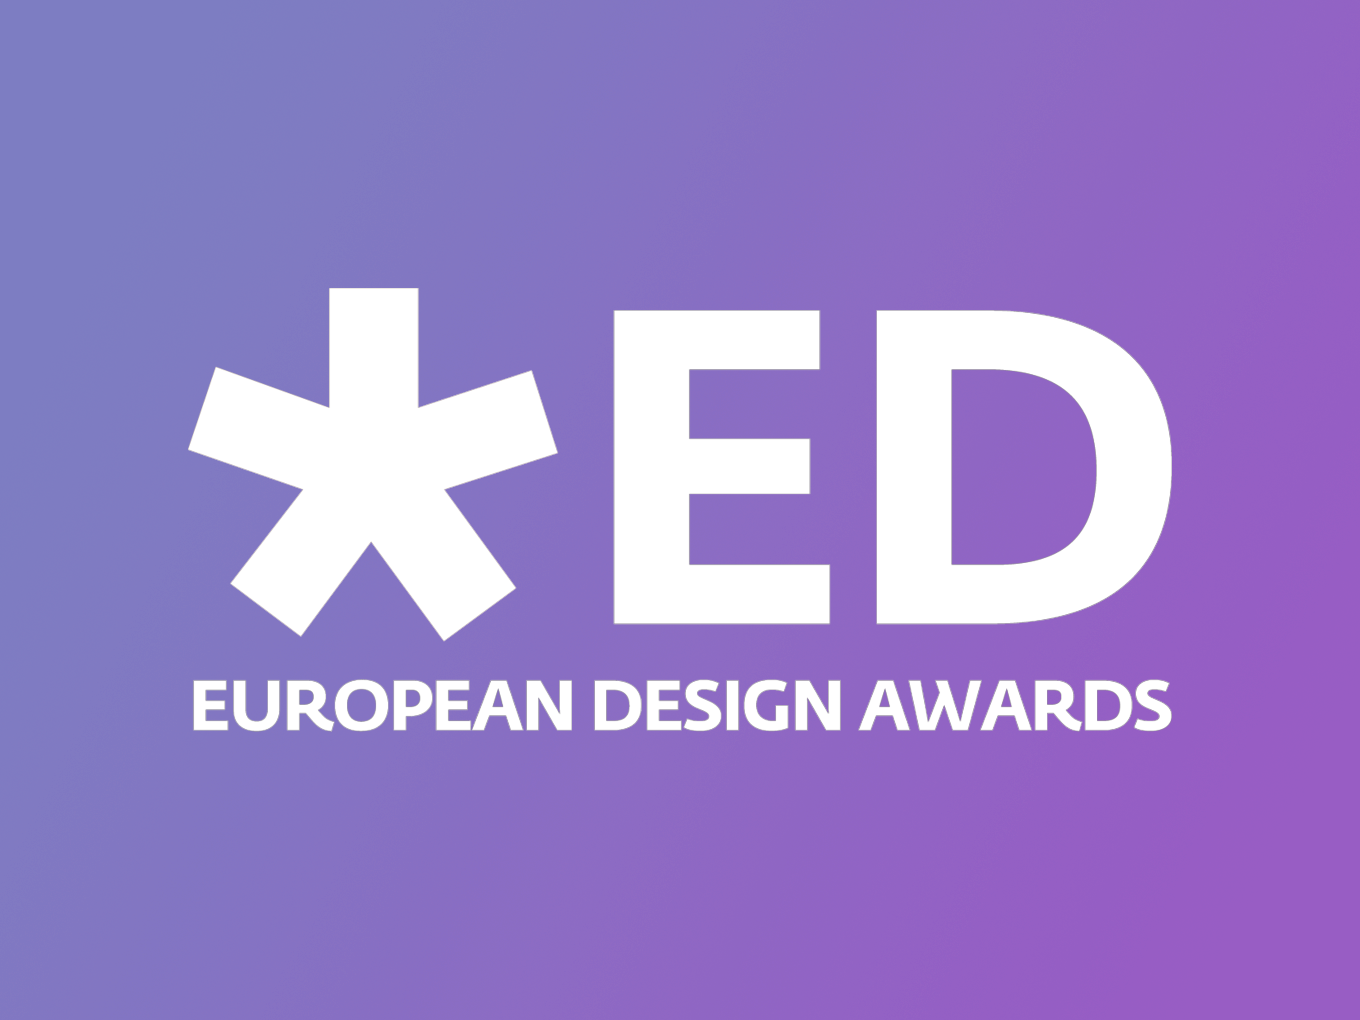 Eu product. European Design Awards. European Design Awards 2018. Логотип European product Design Award. European Design Awards logo.